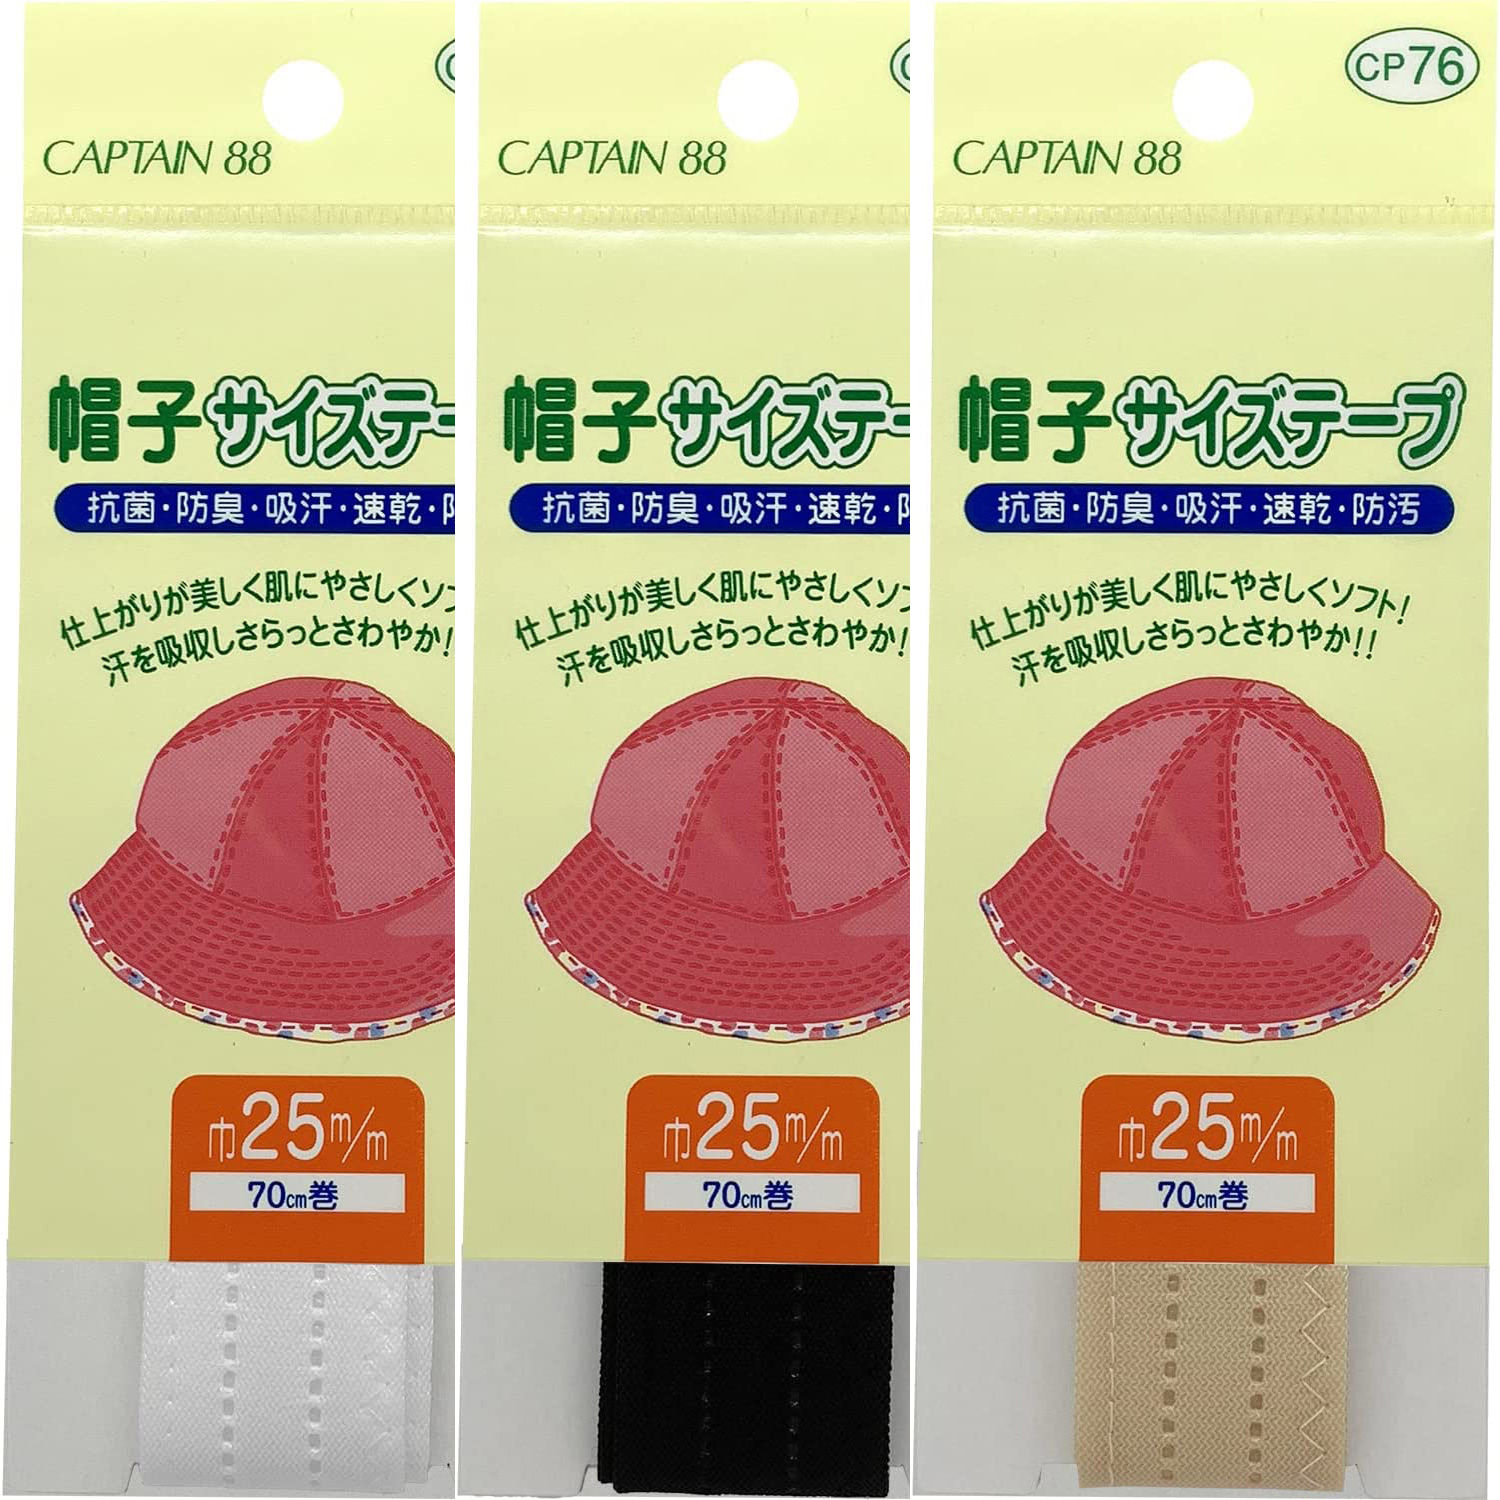 CP76 CAPTAIN Hat Size Tape 25mm Width 70cm Roll (pcs)